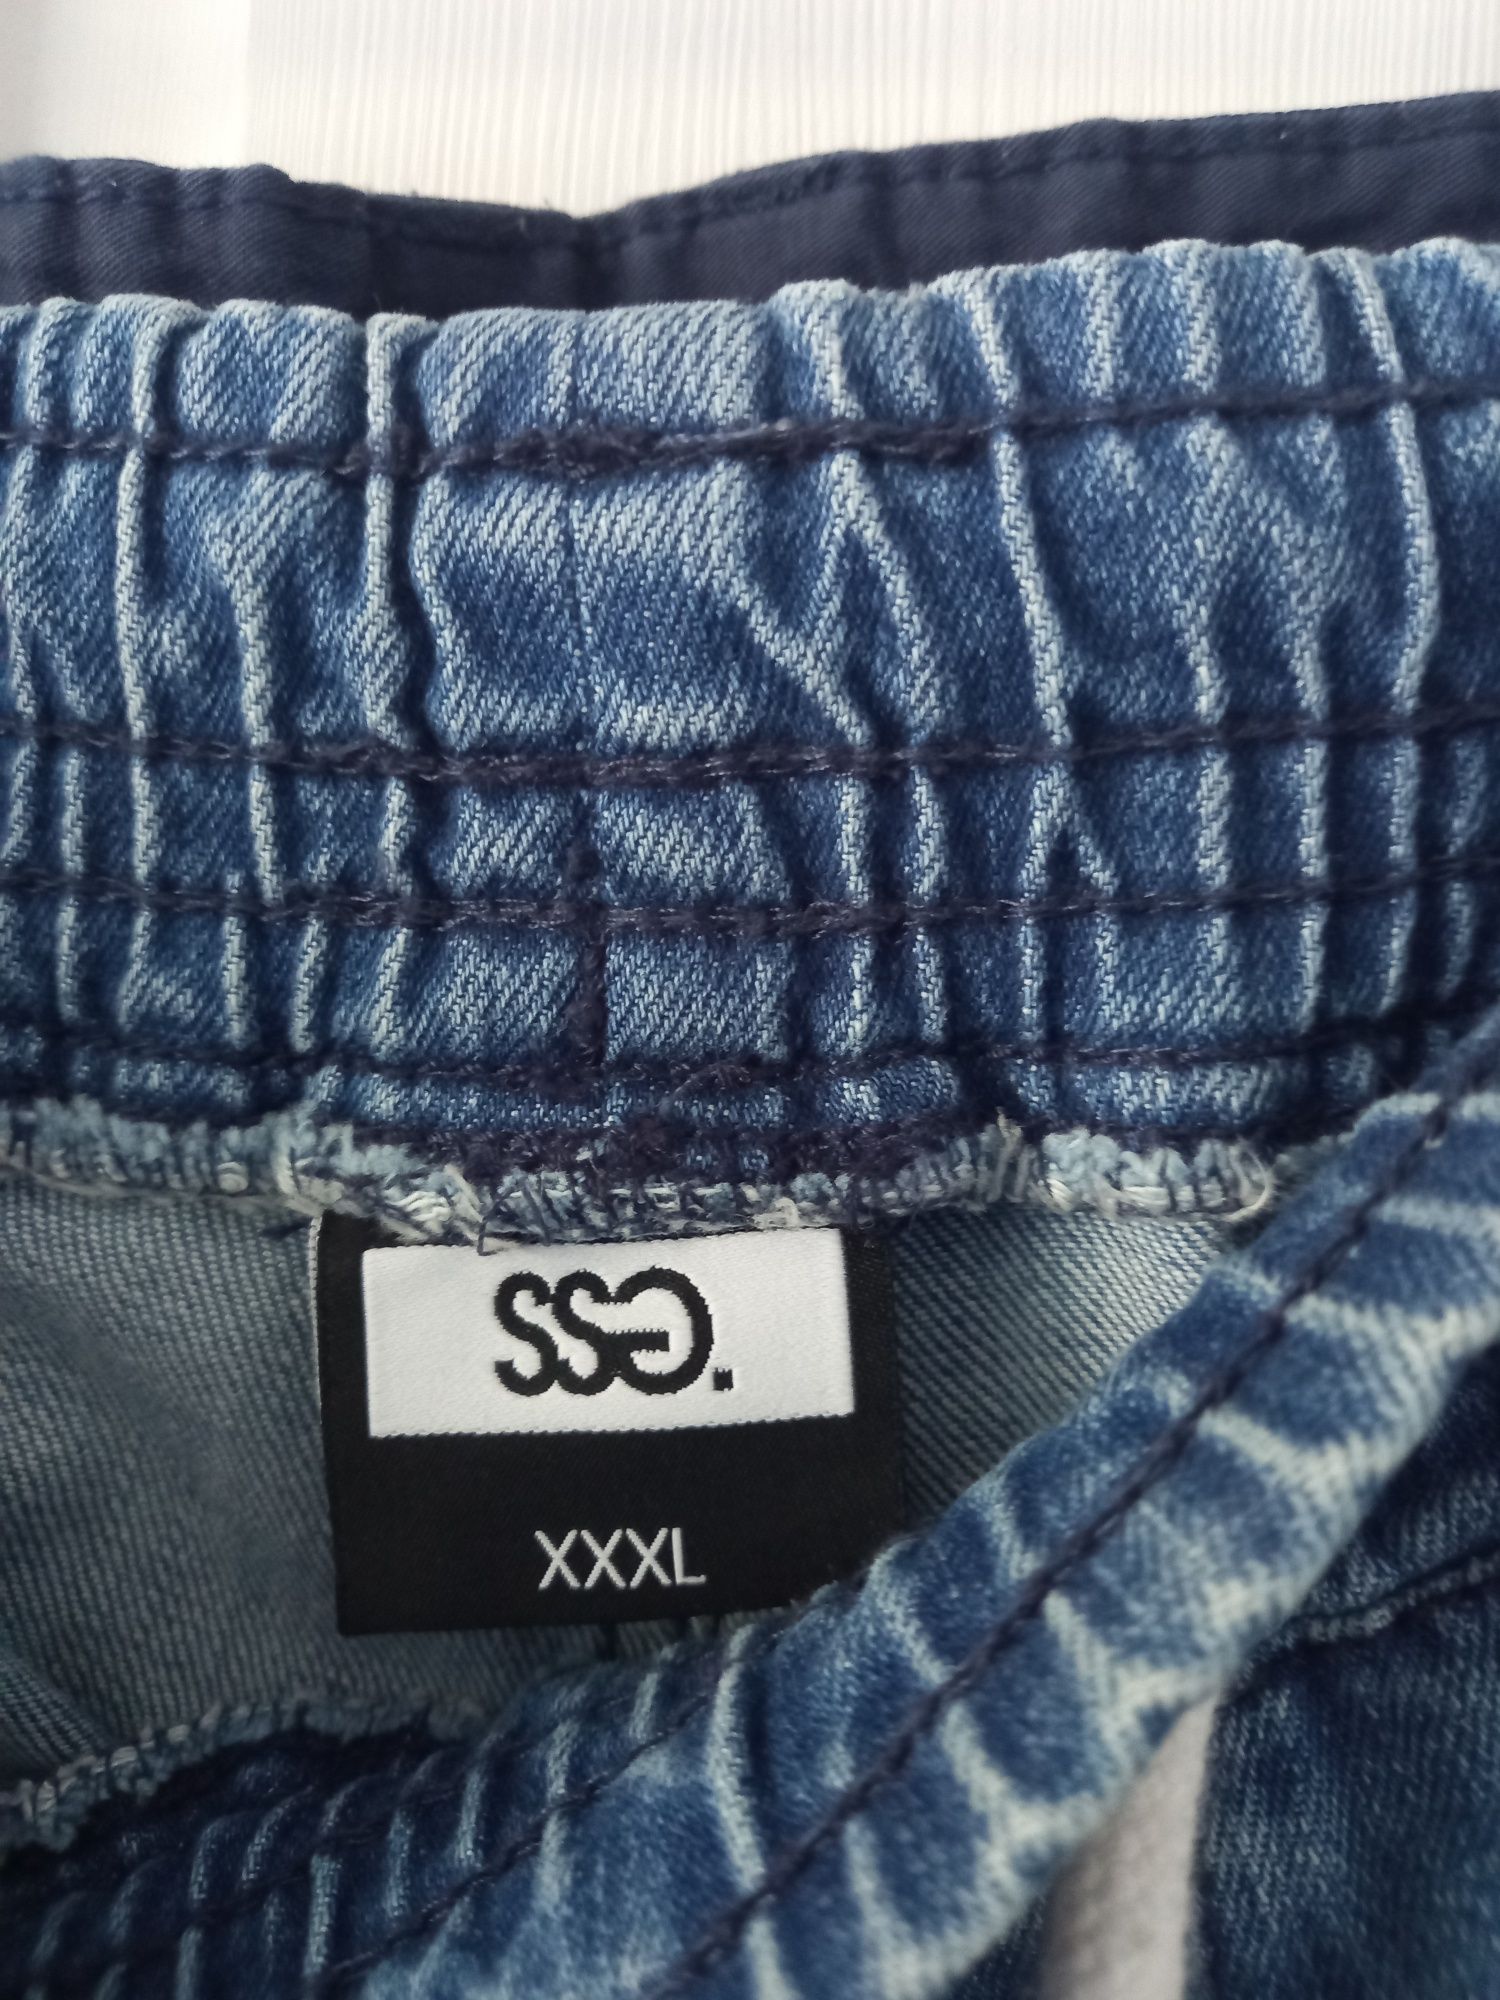 Joggery SSG SLIM SKIN jeans z dziurami heavy light
Rozmiar: XXXL